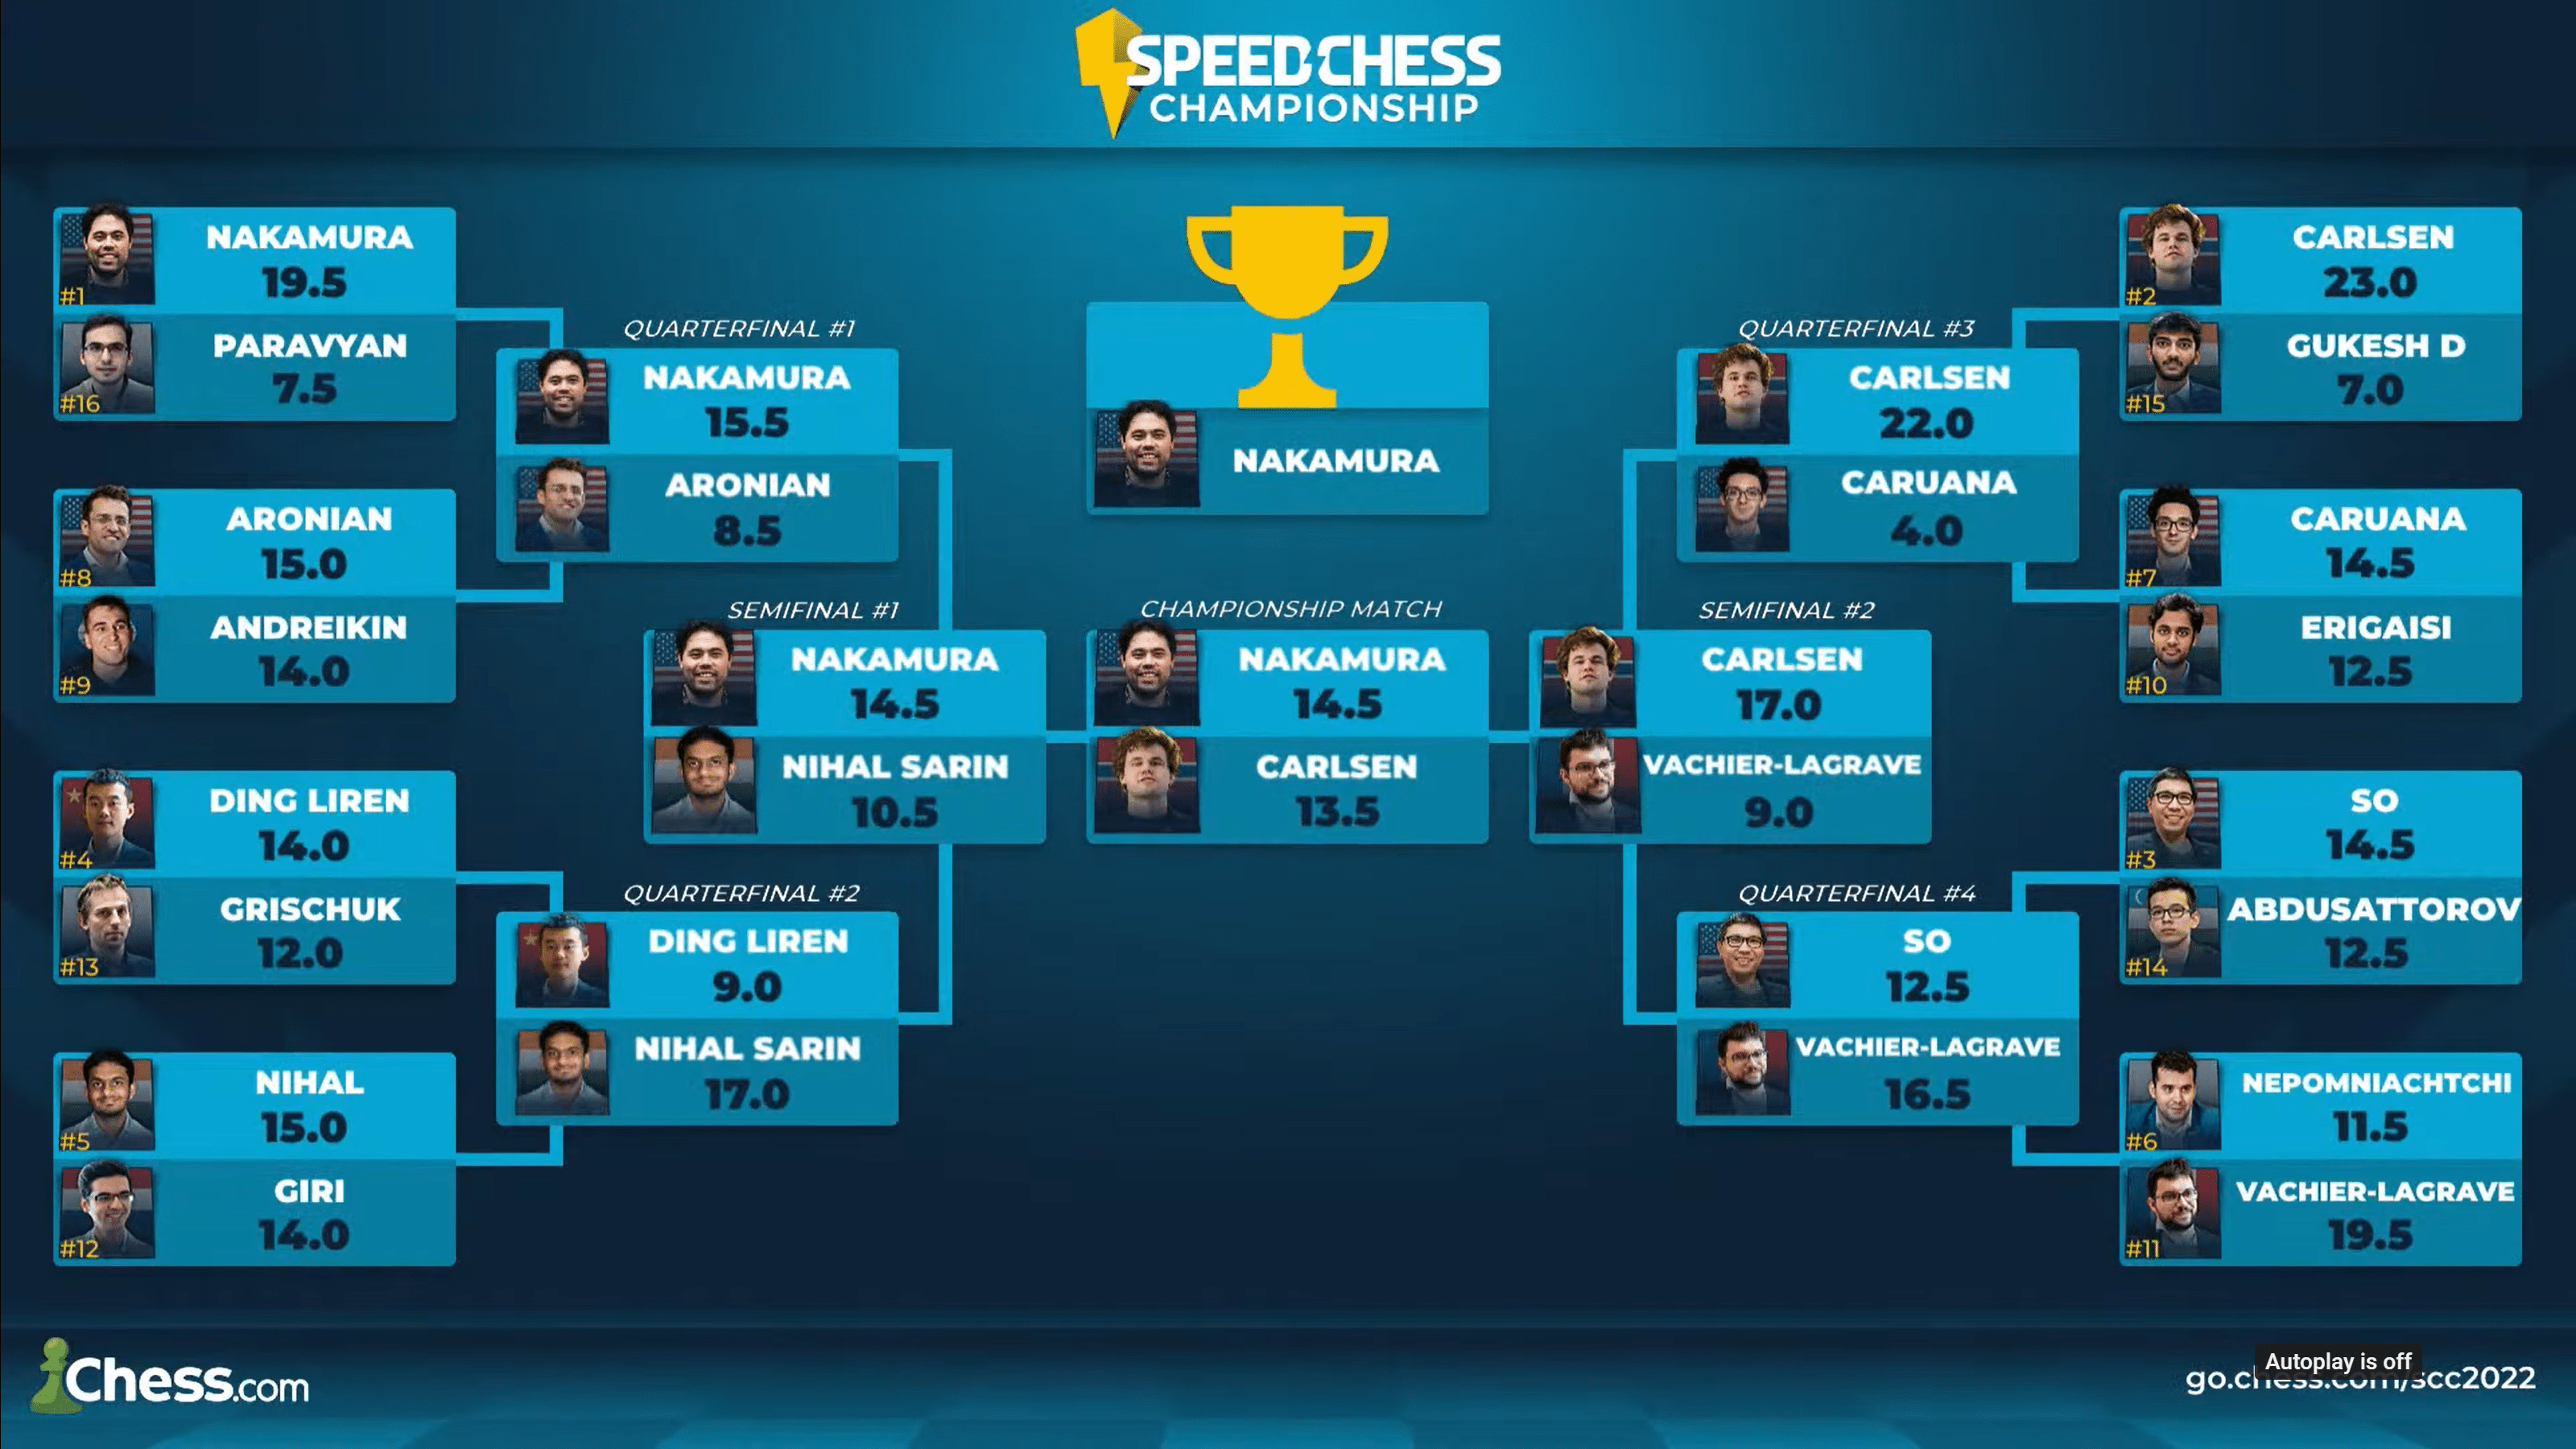 Hikaru Nakamura wins Speed Chess Championship